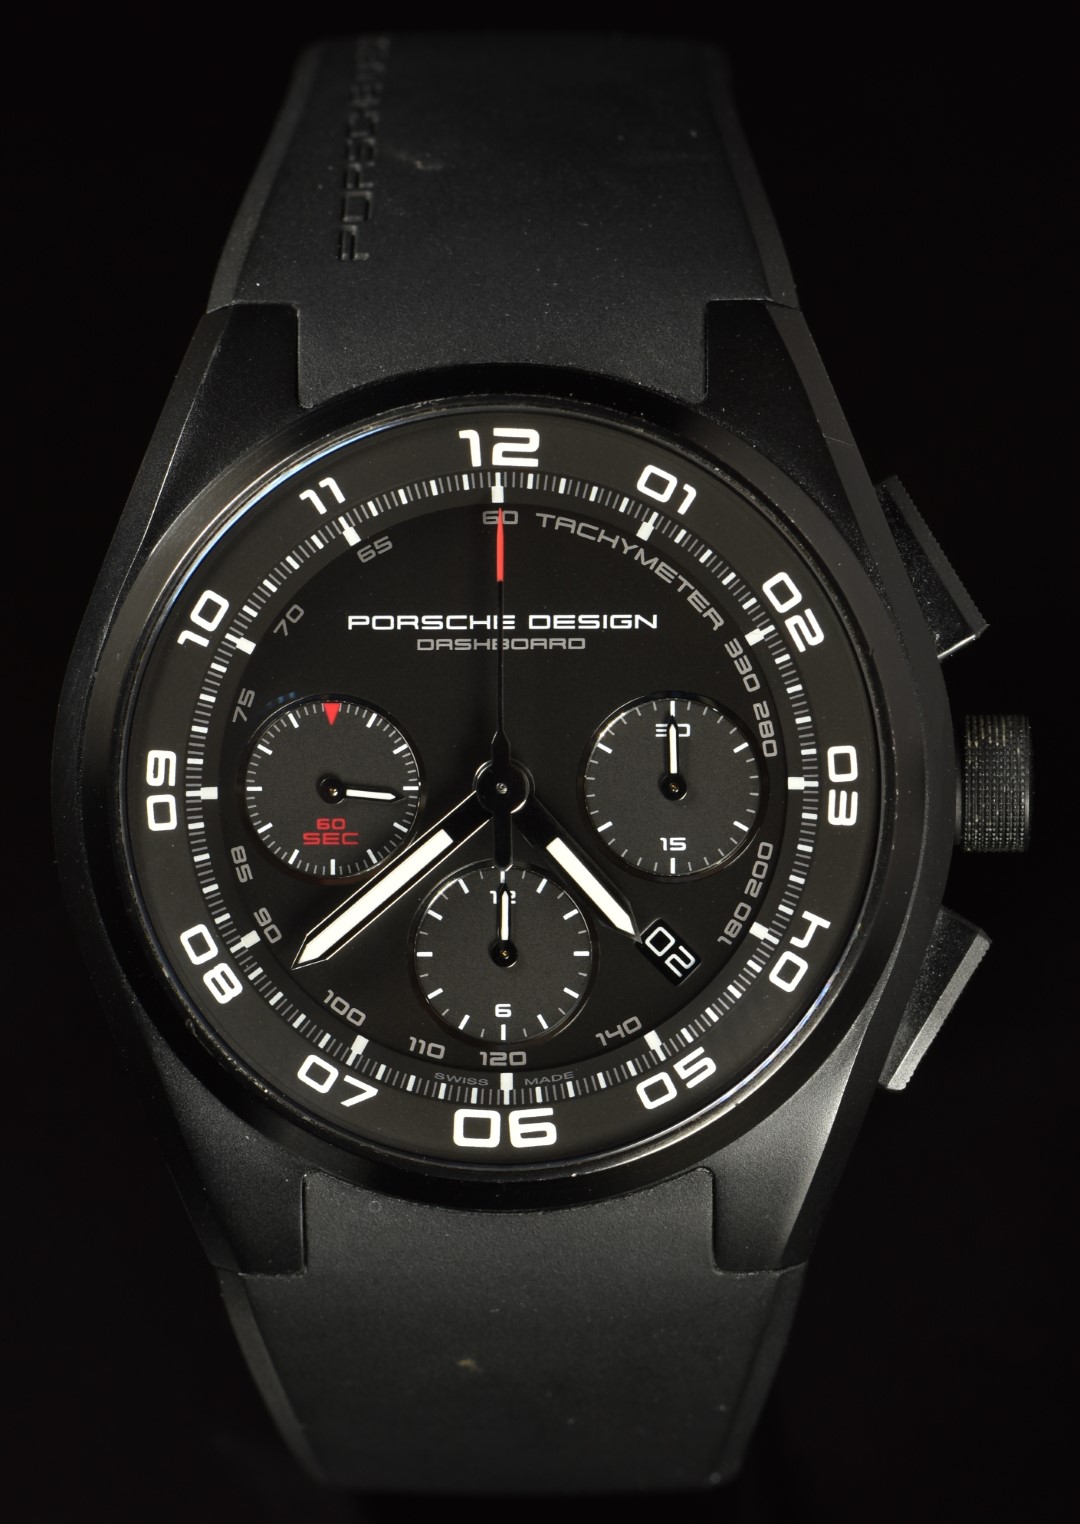 Porsche Design Dashboard gentleman's automatic chronograph wristwatch ref. P6620 M13 with date